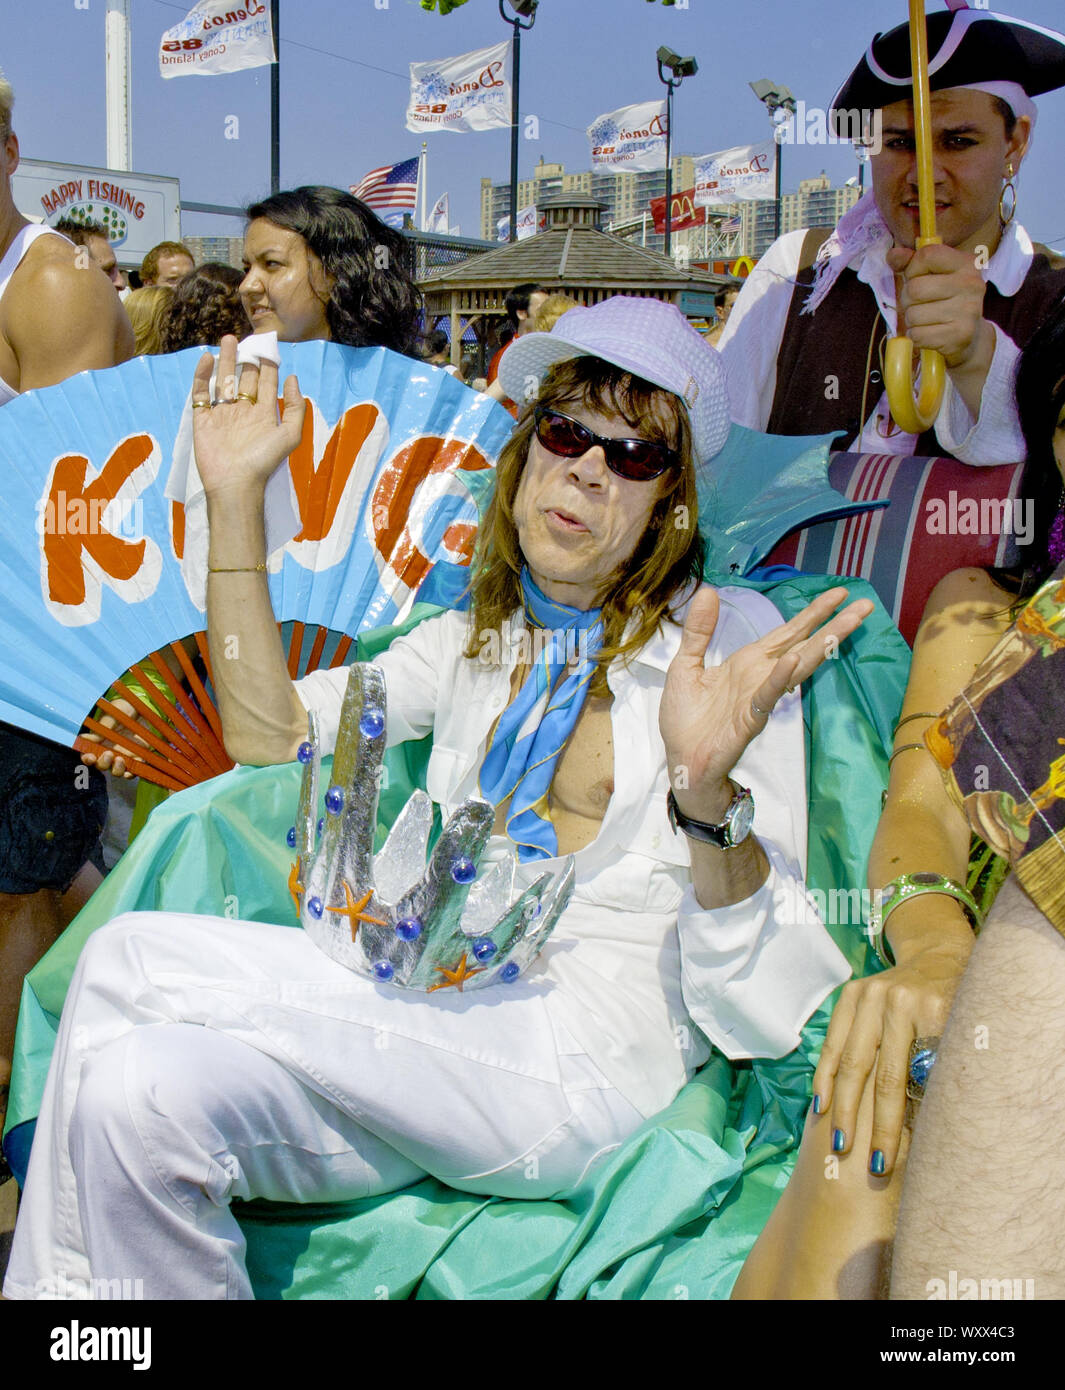 David Johansen in Coney Island, Brooklyn, NY, as the King of the 2005 Mermaid Parade Stock Photo